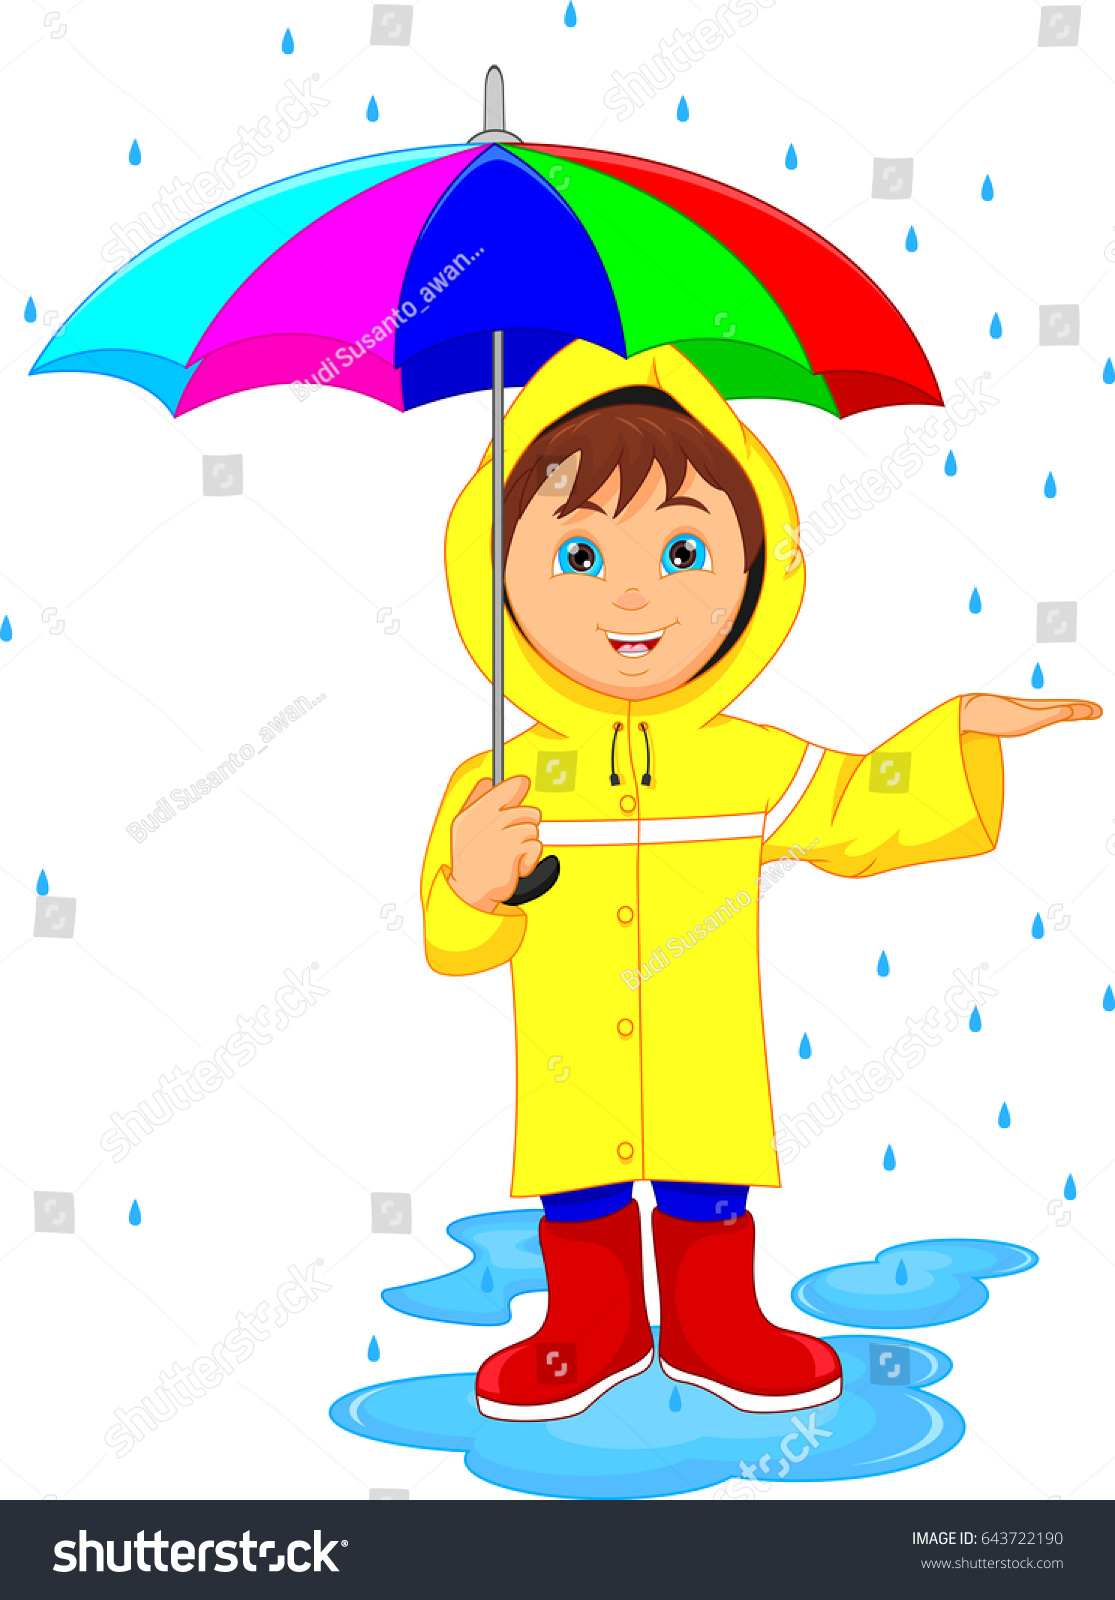 With portal . Clipart umbrella child